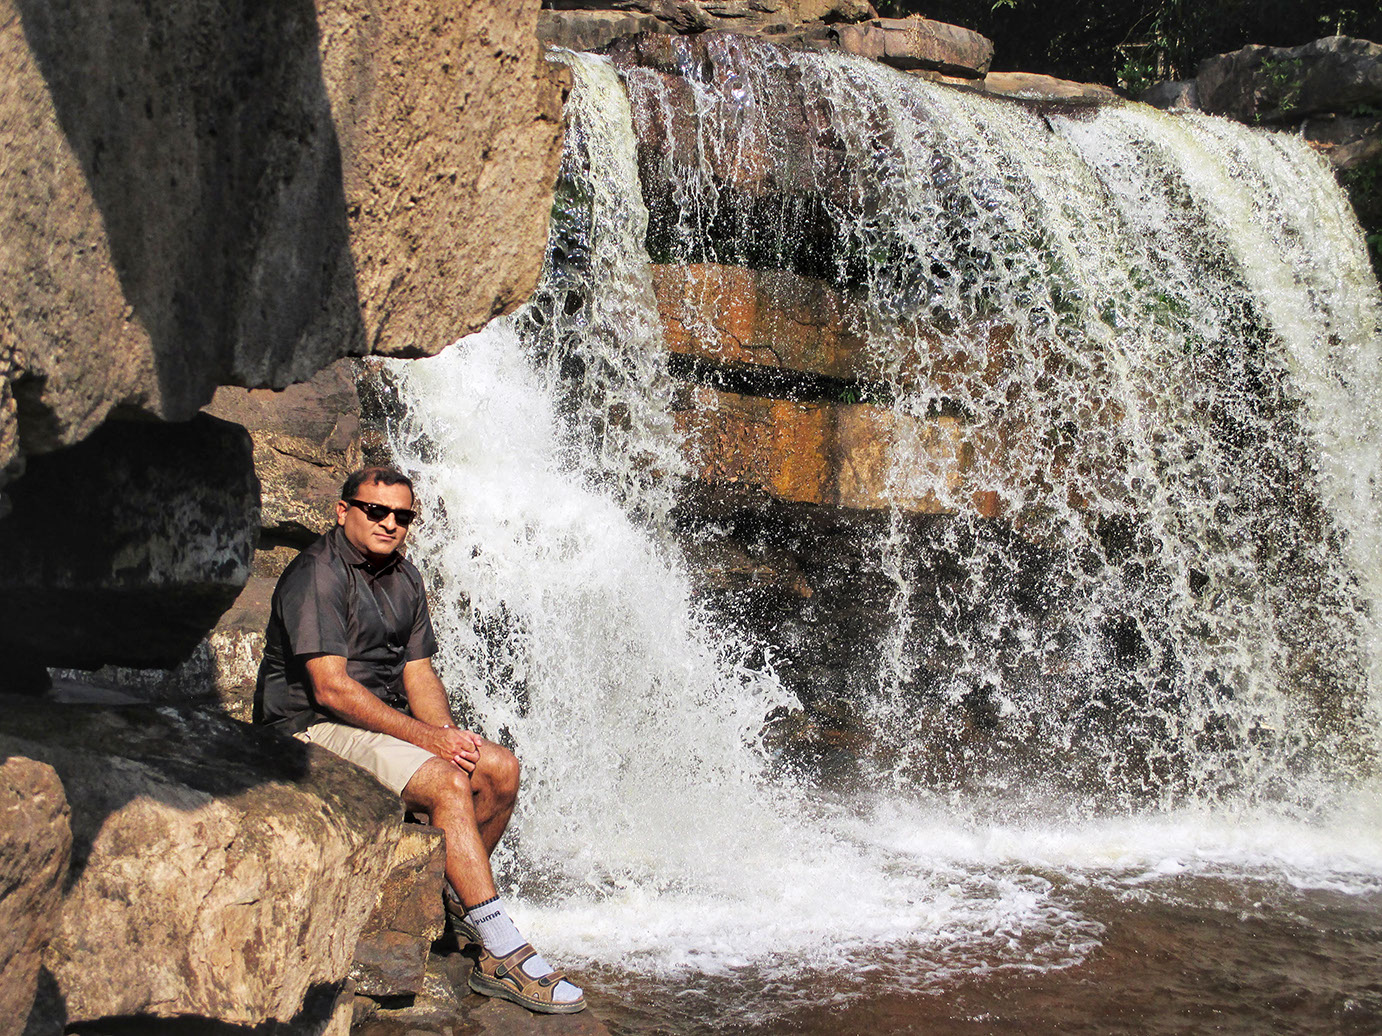 Gushing Kbal Chhay Falls of Sihanoukville